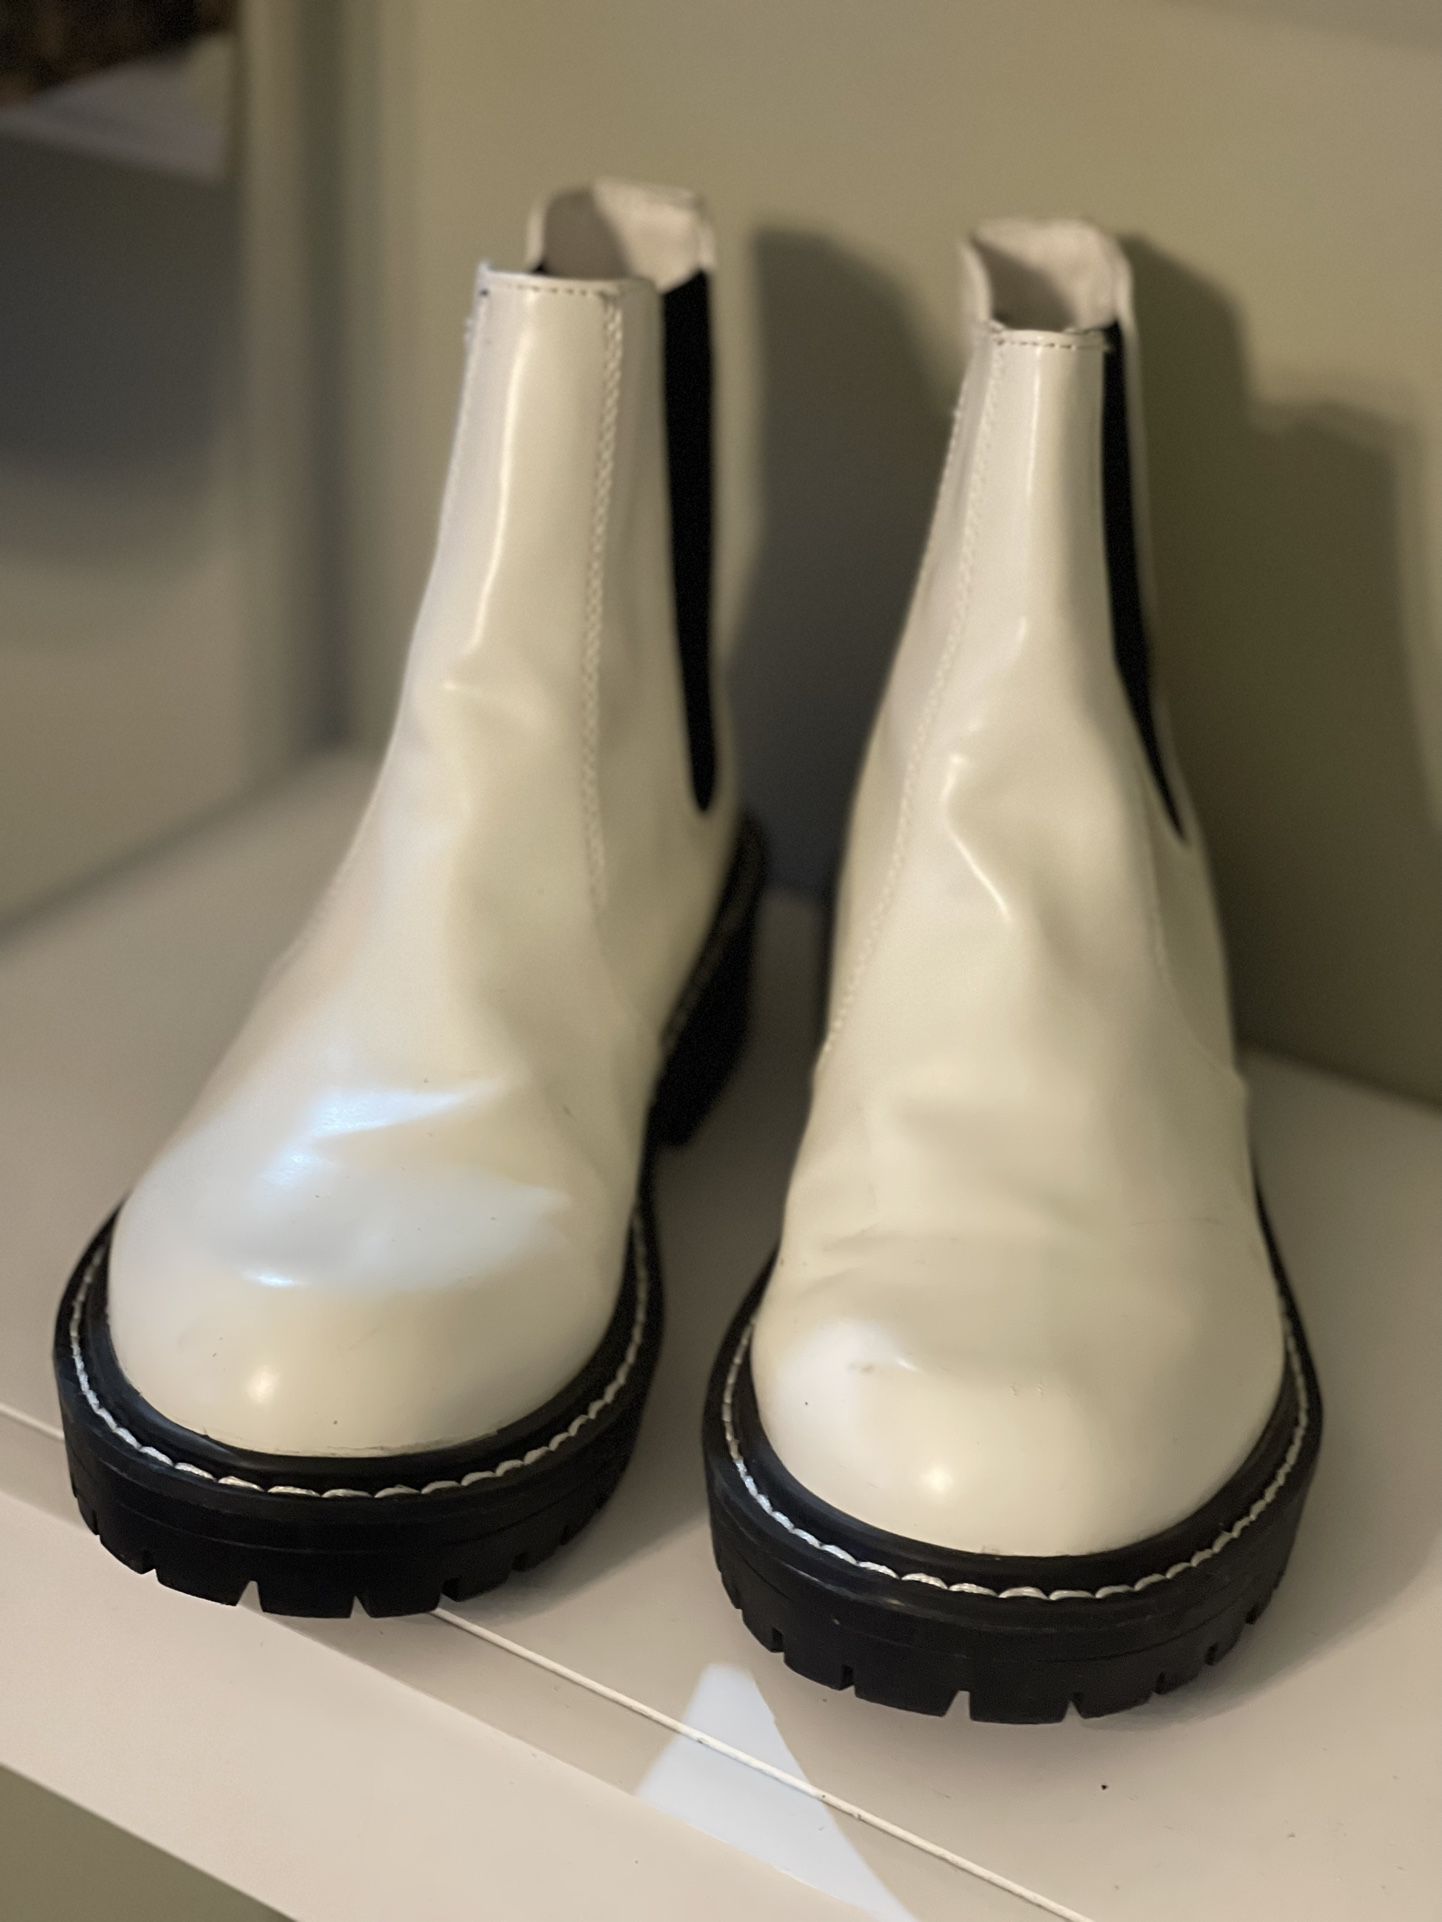 White Rain Boots